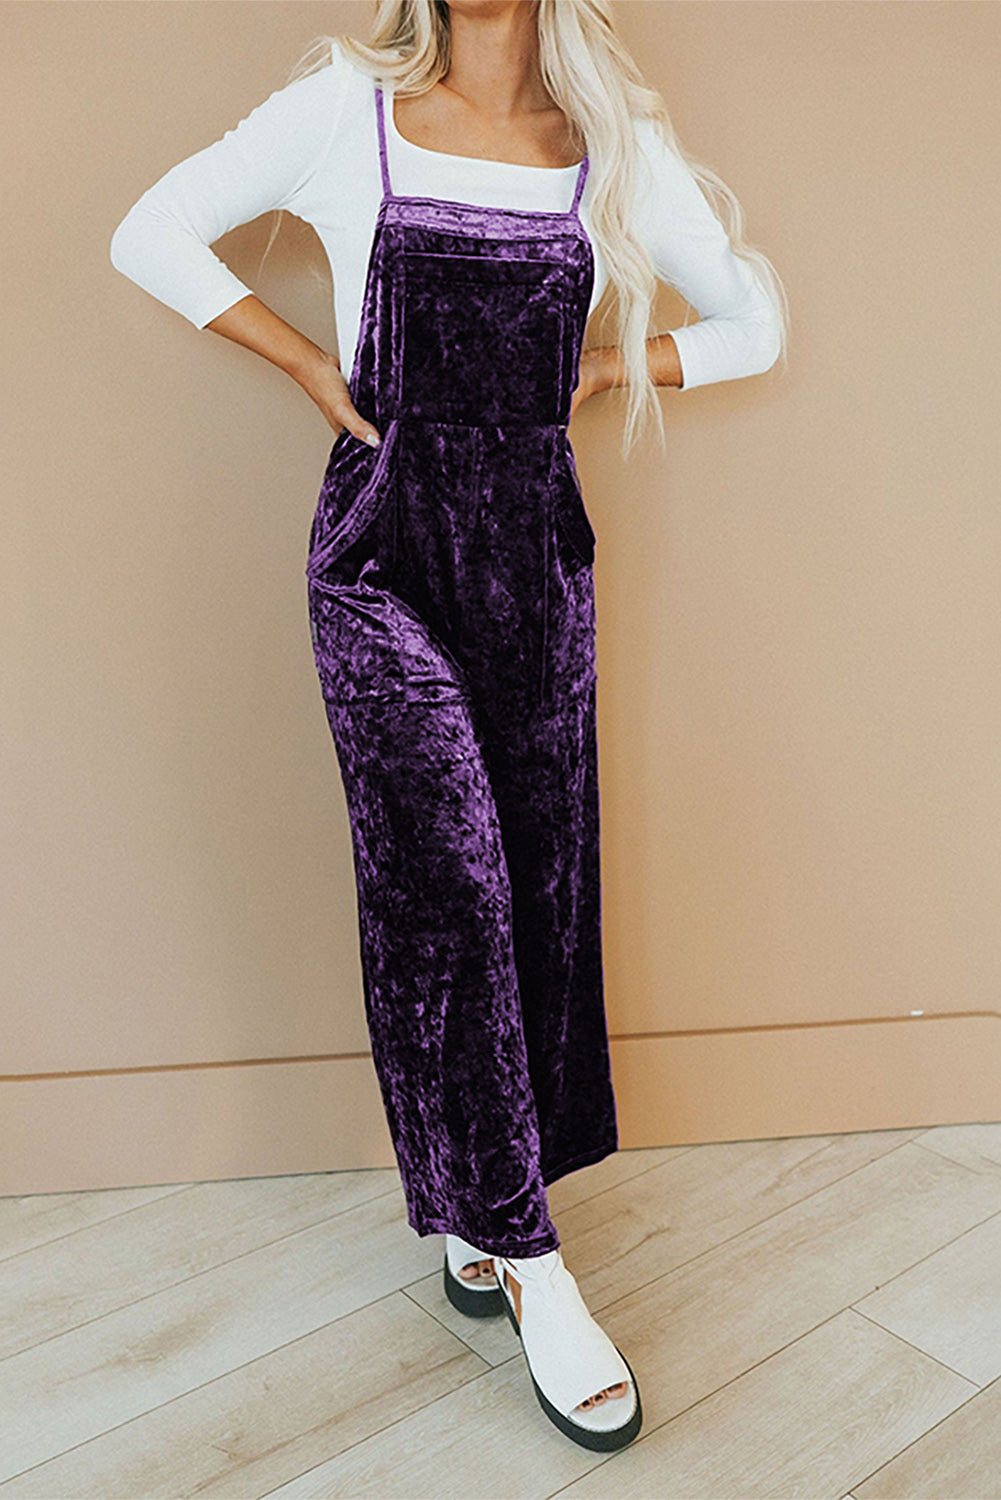 Tillandsia violet vintage fines bretelles poches latérales salopette en velours